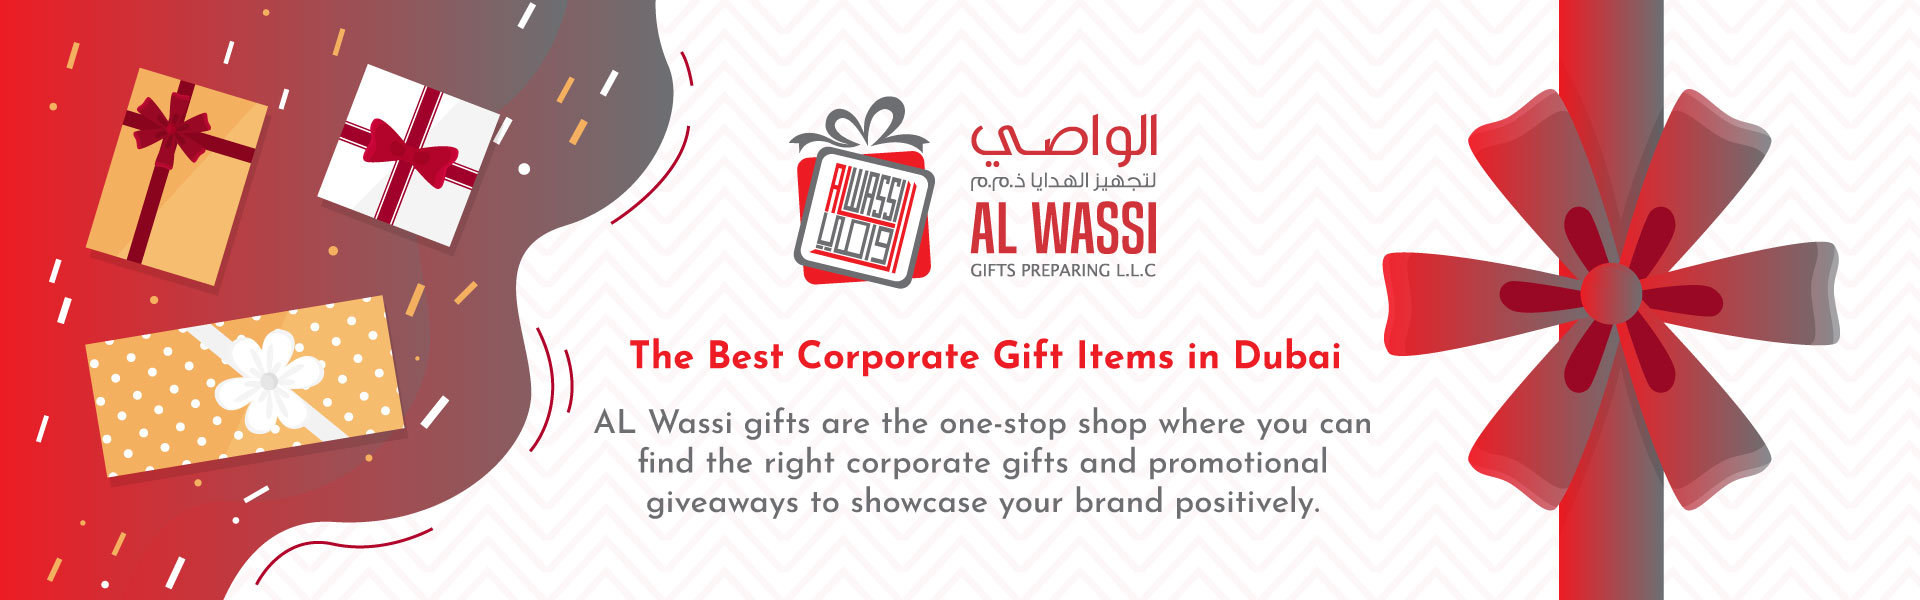 Corporate Gifts | Digital Printing in Dubai